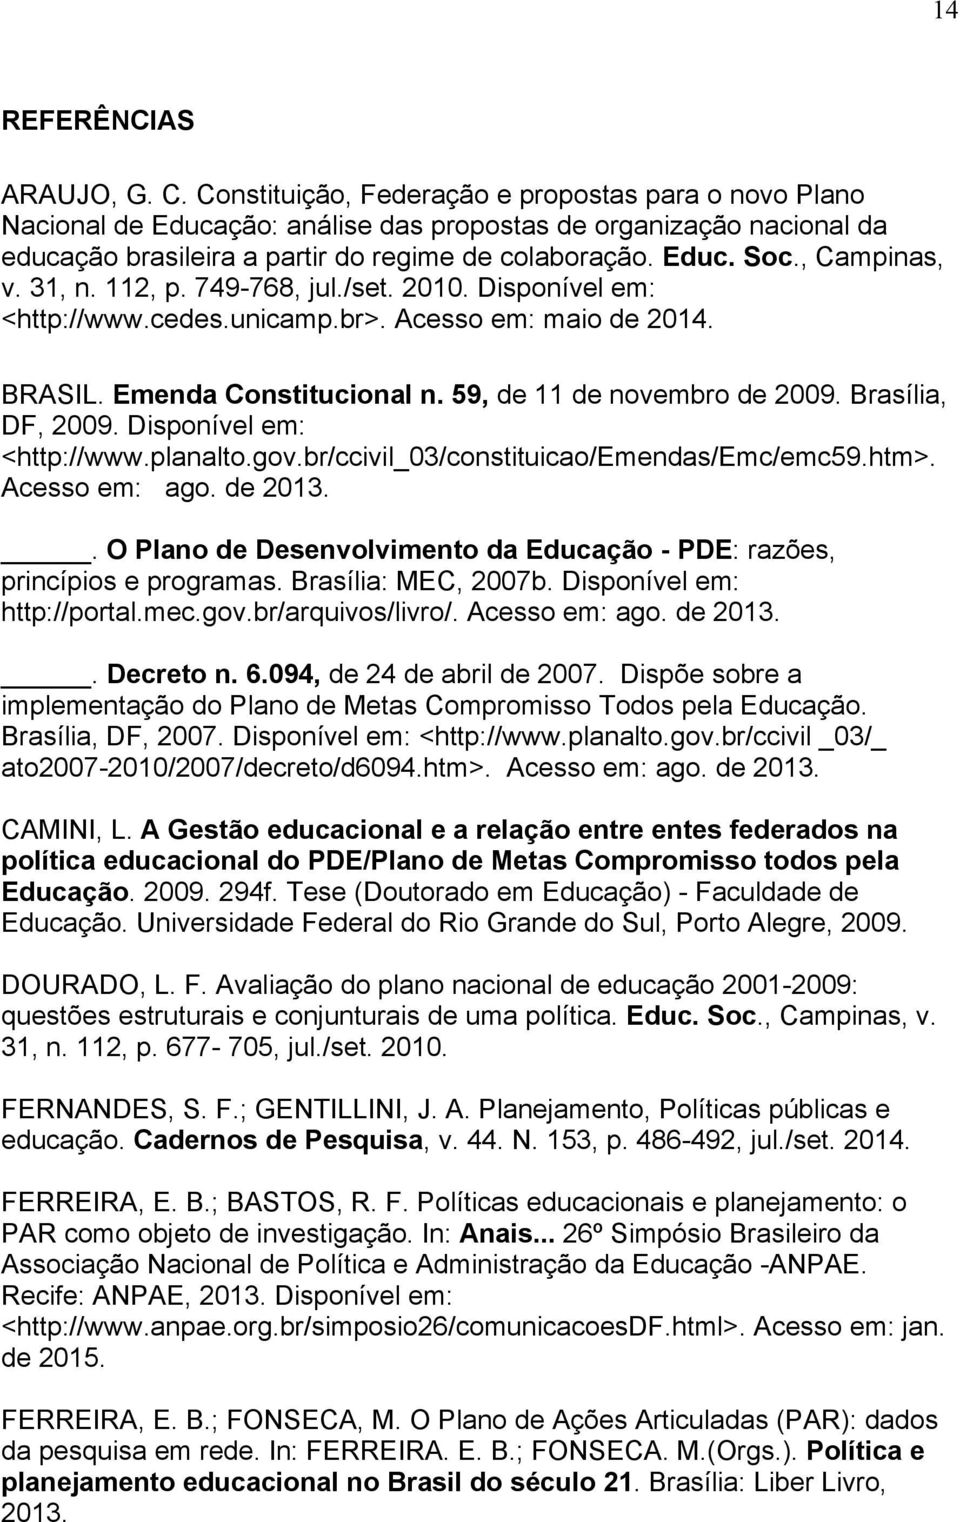 , Campinas, v. 31, n. 112, p. 749-768, jul./set. 2010. Disponível em: <http://www.cedes.unicamp.br>. Acesso em: maio de 2014. BRASIL. Emenda Constitucional n. 59, de 11 de novembro de 2009.